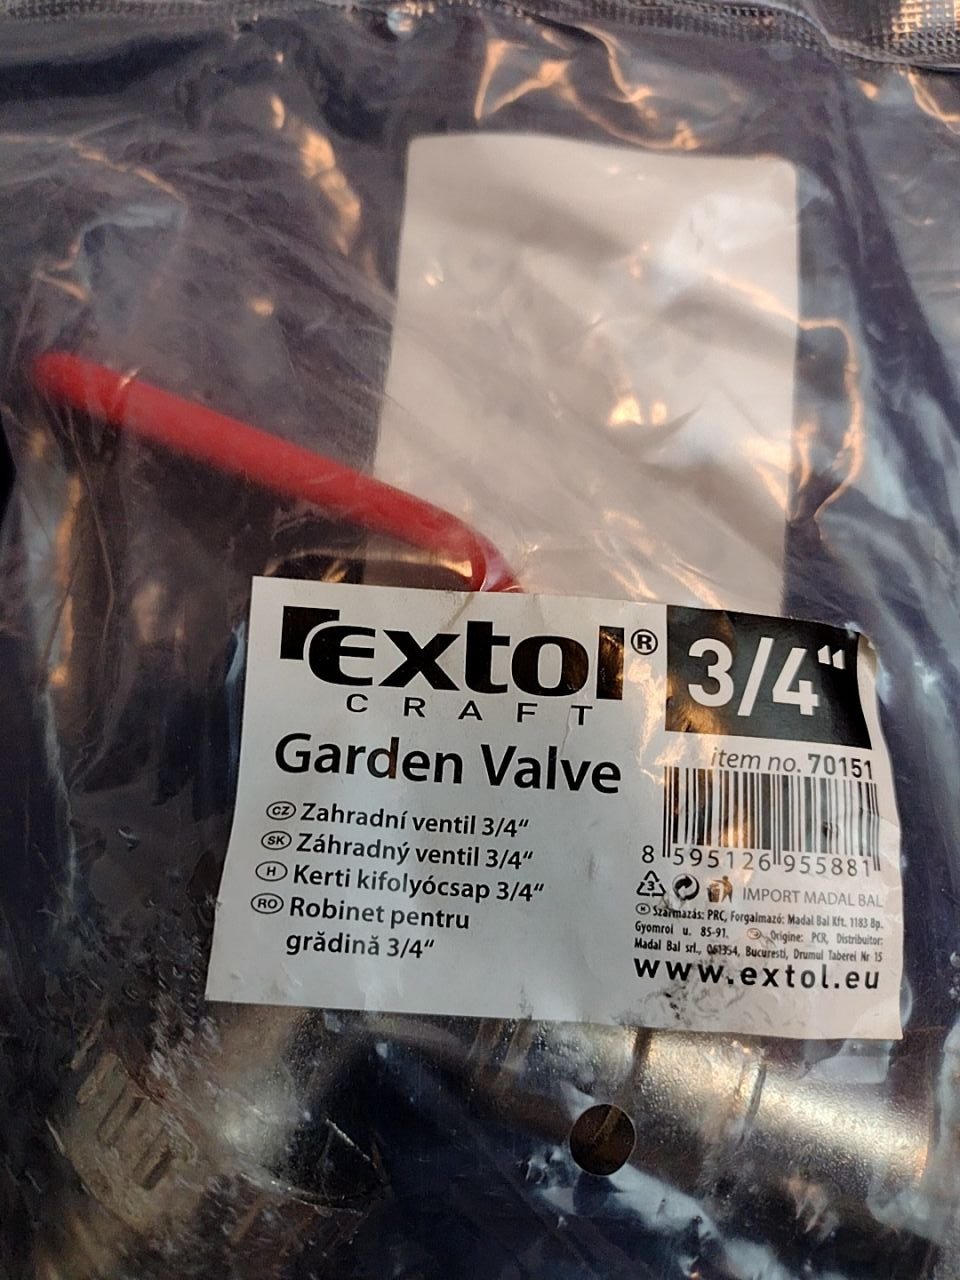 Zahradní ventil 3/4" EXTOL 